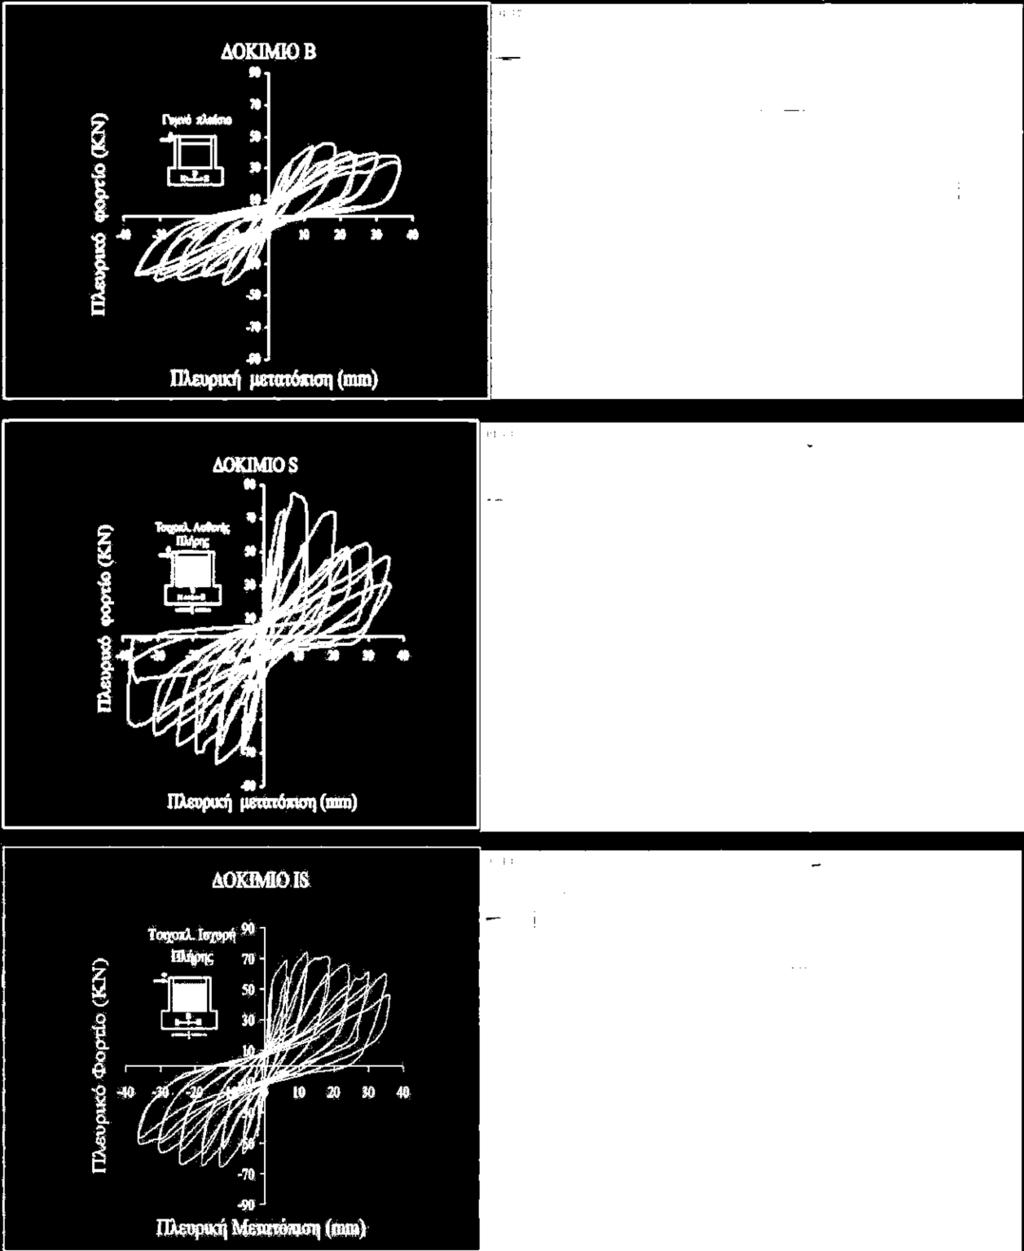 Στις εικόνες (2) και (3) παρουσιάζονται οι υστερητικοί βρόχοι απόκρισης φορτίου μετατόπισης του πάνω κόμβου των δοκιμίων και οι εικόνες αστοχίας των δοκιμίων μετά το τέλος της φόρτισης.